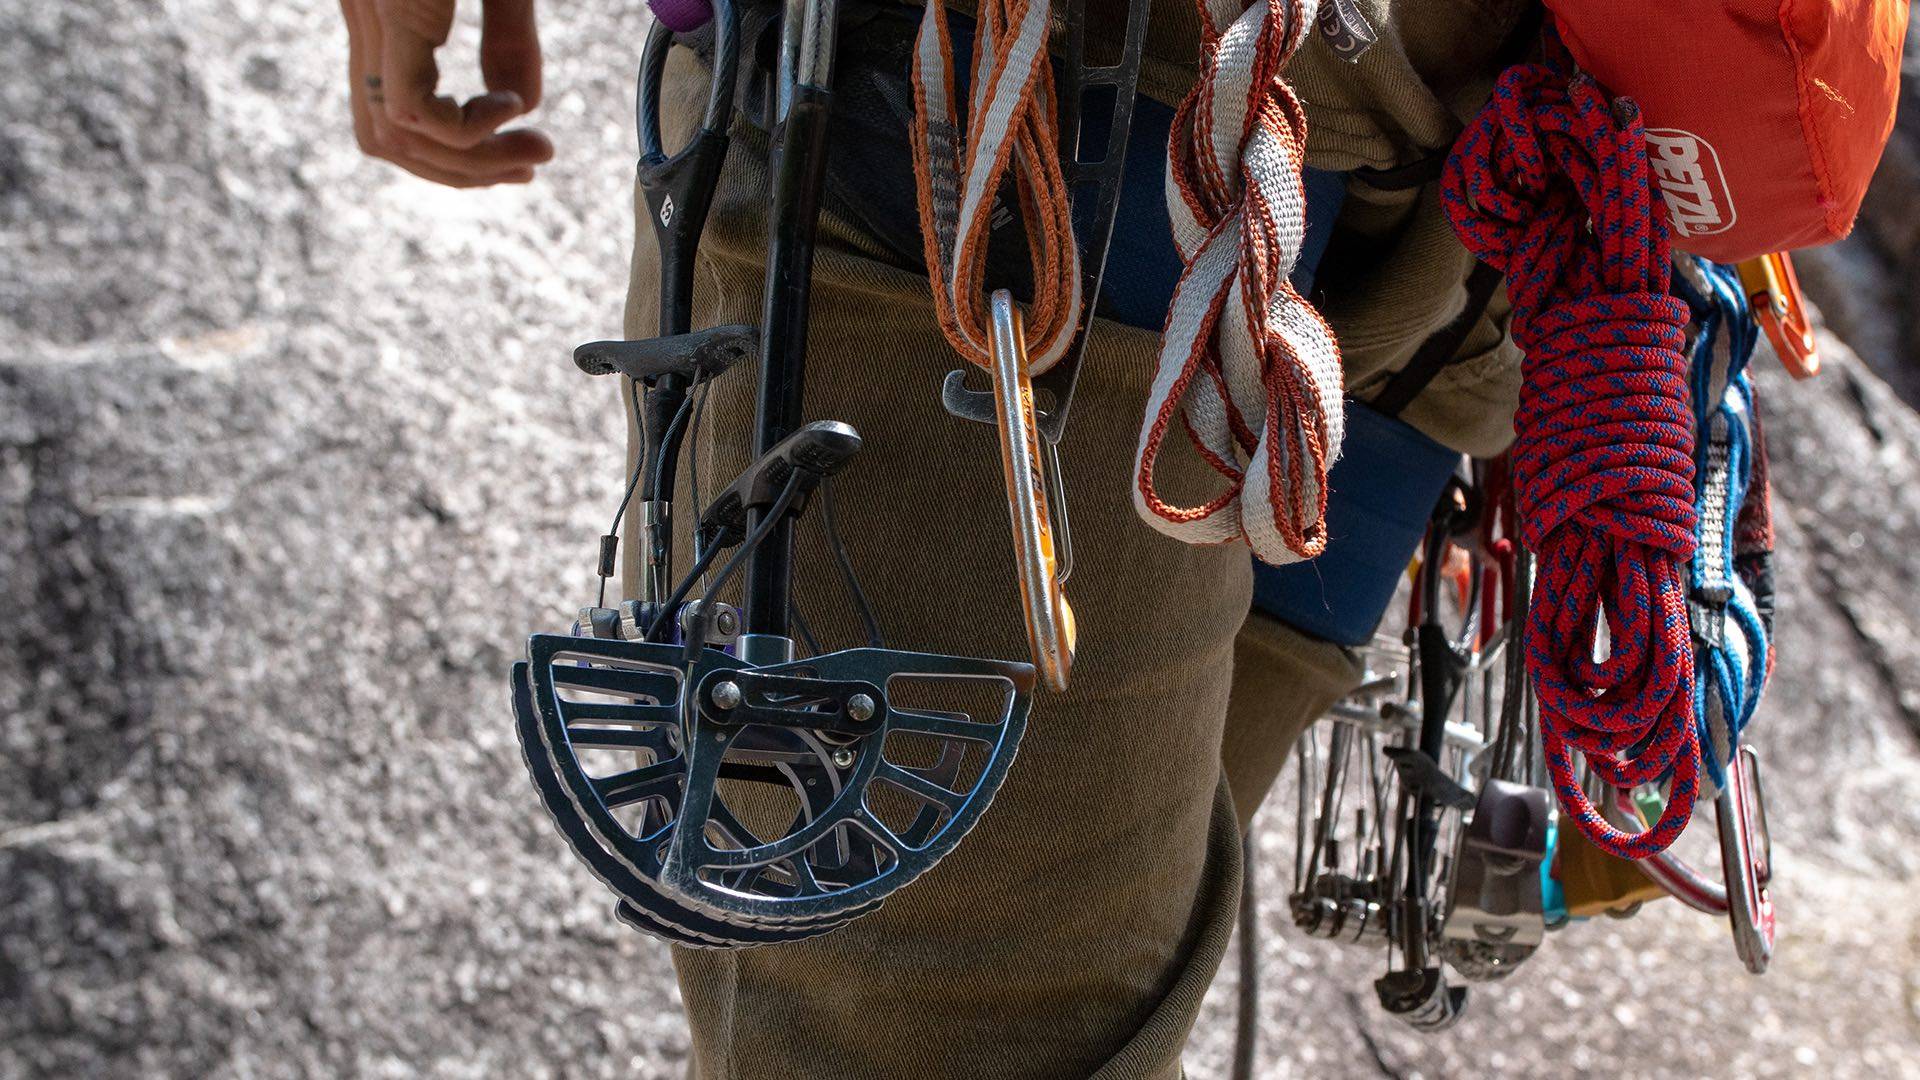 Rock Climbing equipment around harness